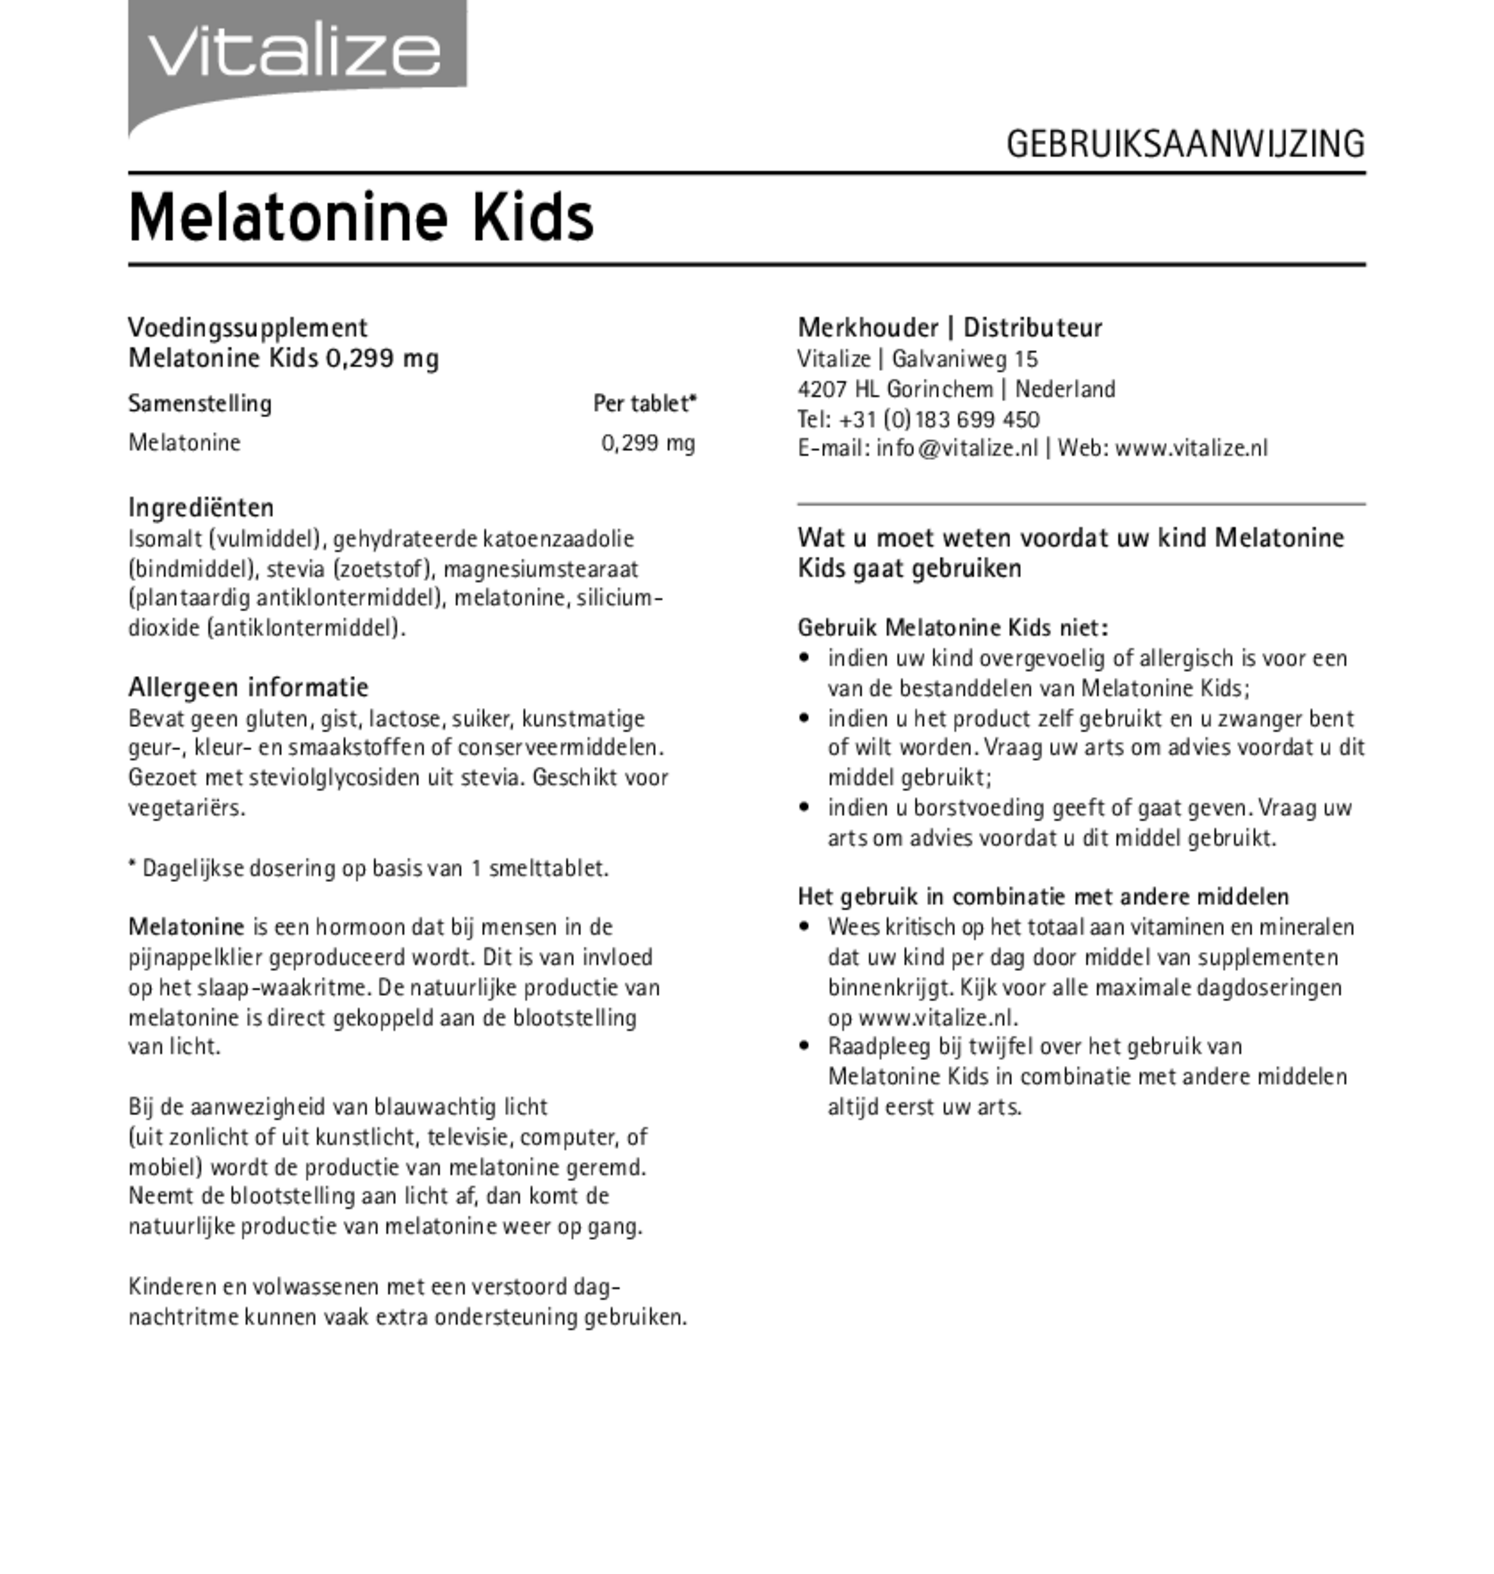 Melatonine Kids 0,299mg Tabletten afbeelding van document #1, gebruiksaanwijzing